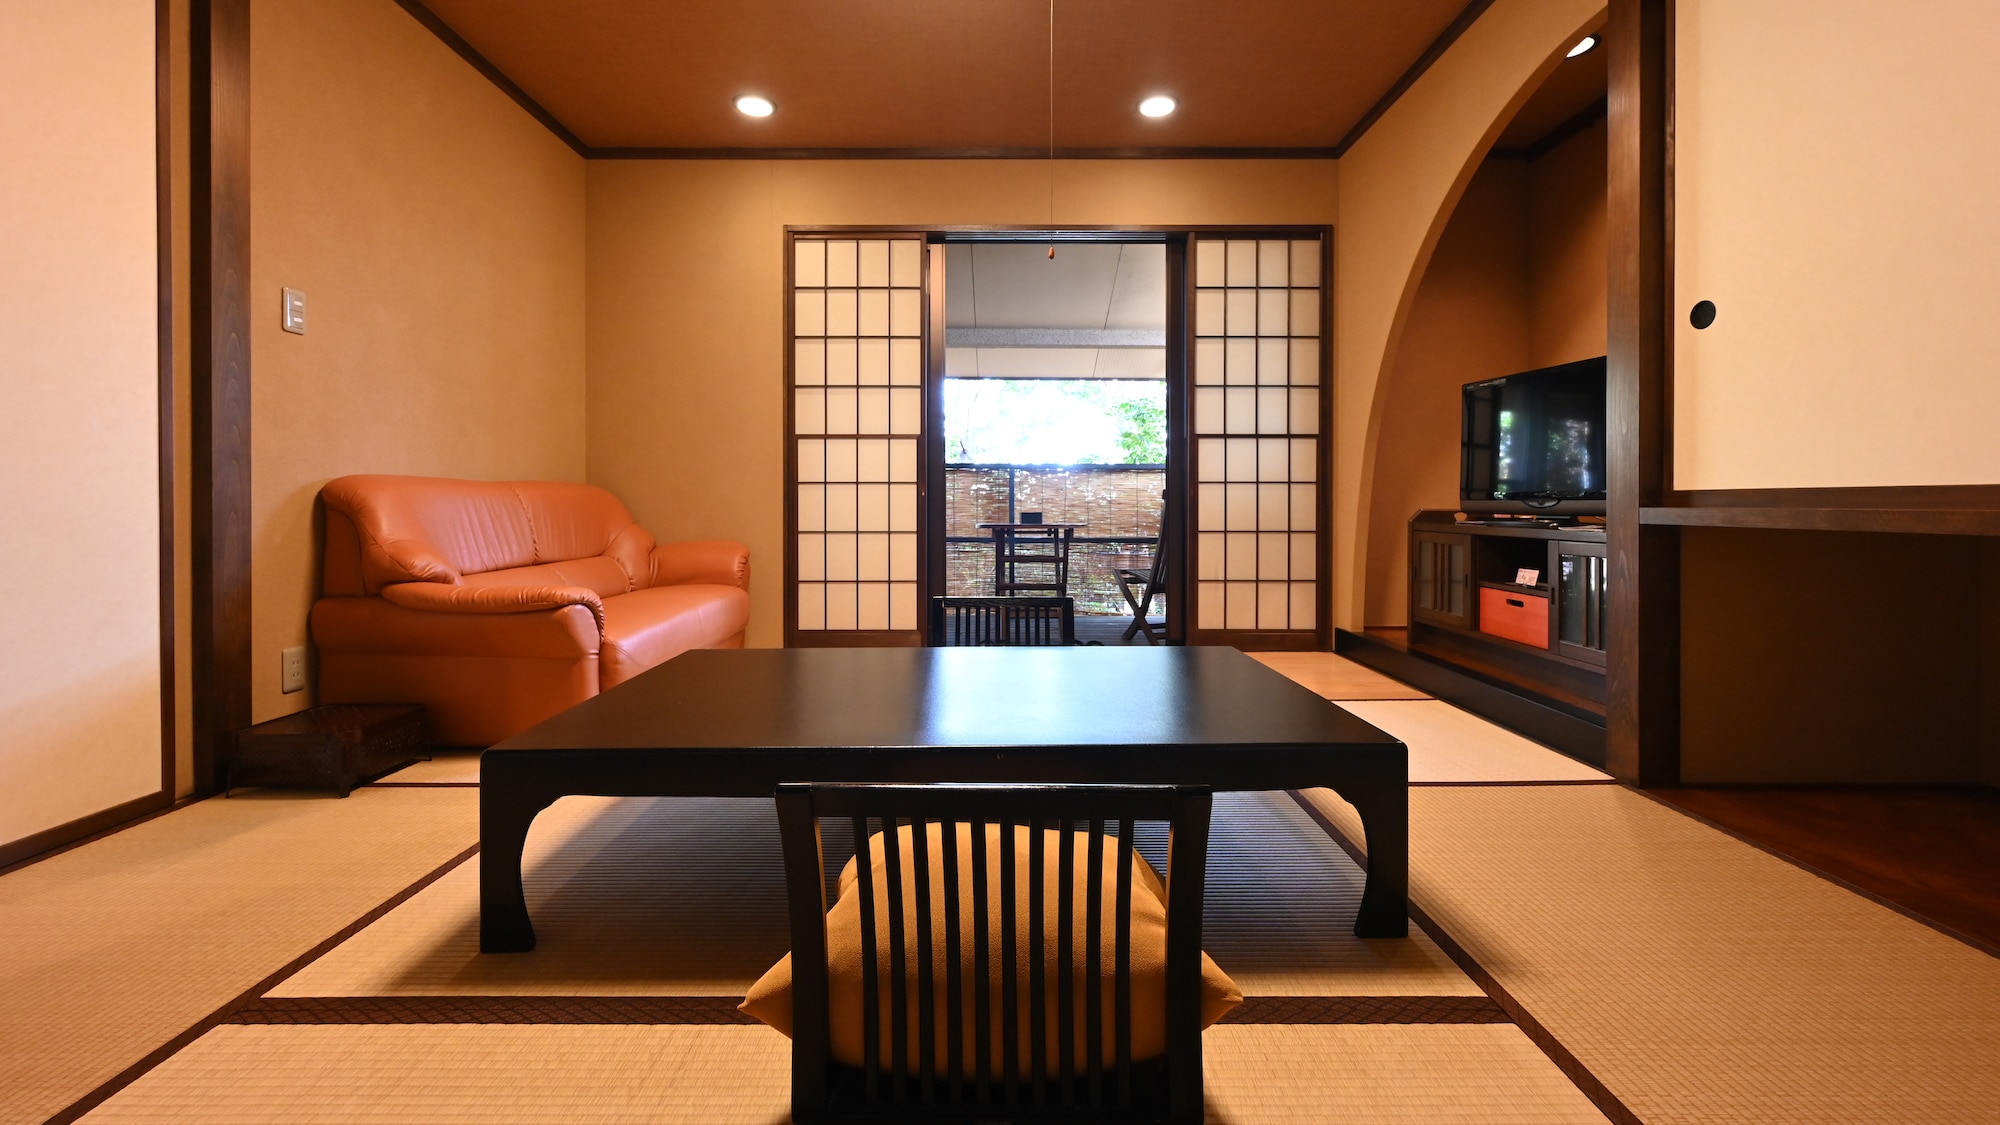 Kamar Jepang dan Barat (8 tikar tatami + kamar twin)